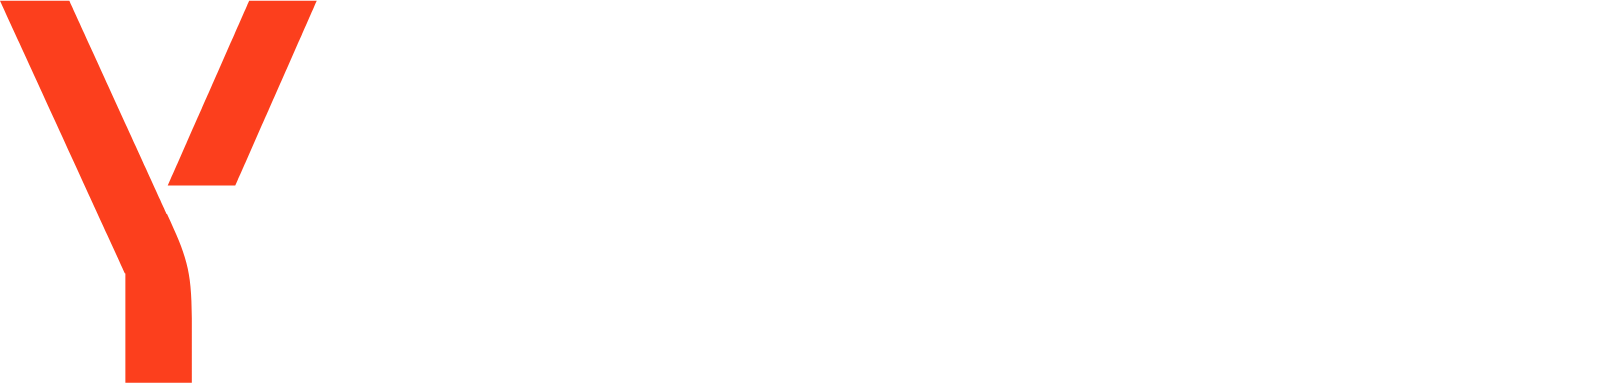 Yandex logo large for dark backgrounds (transparent PNG)